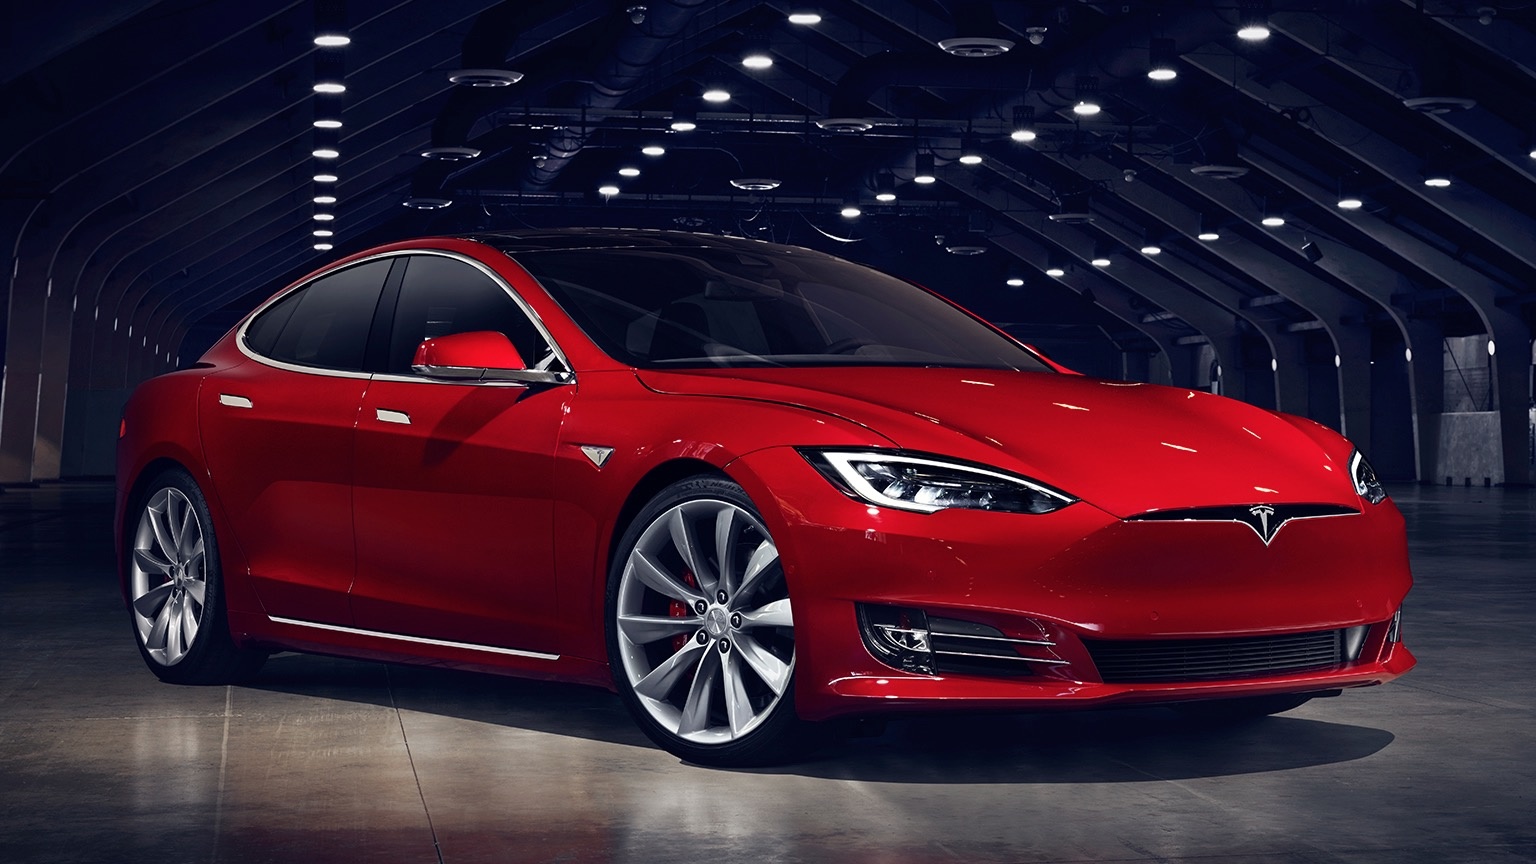 Sélection de 3 produits indispensables pour votre Tesla